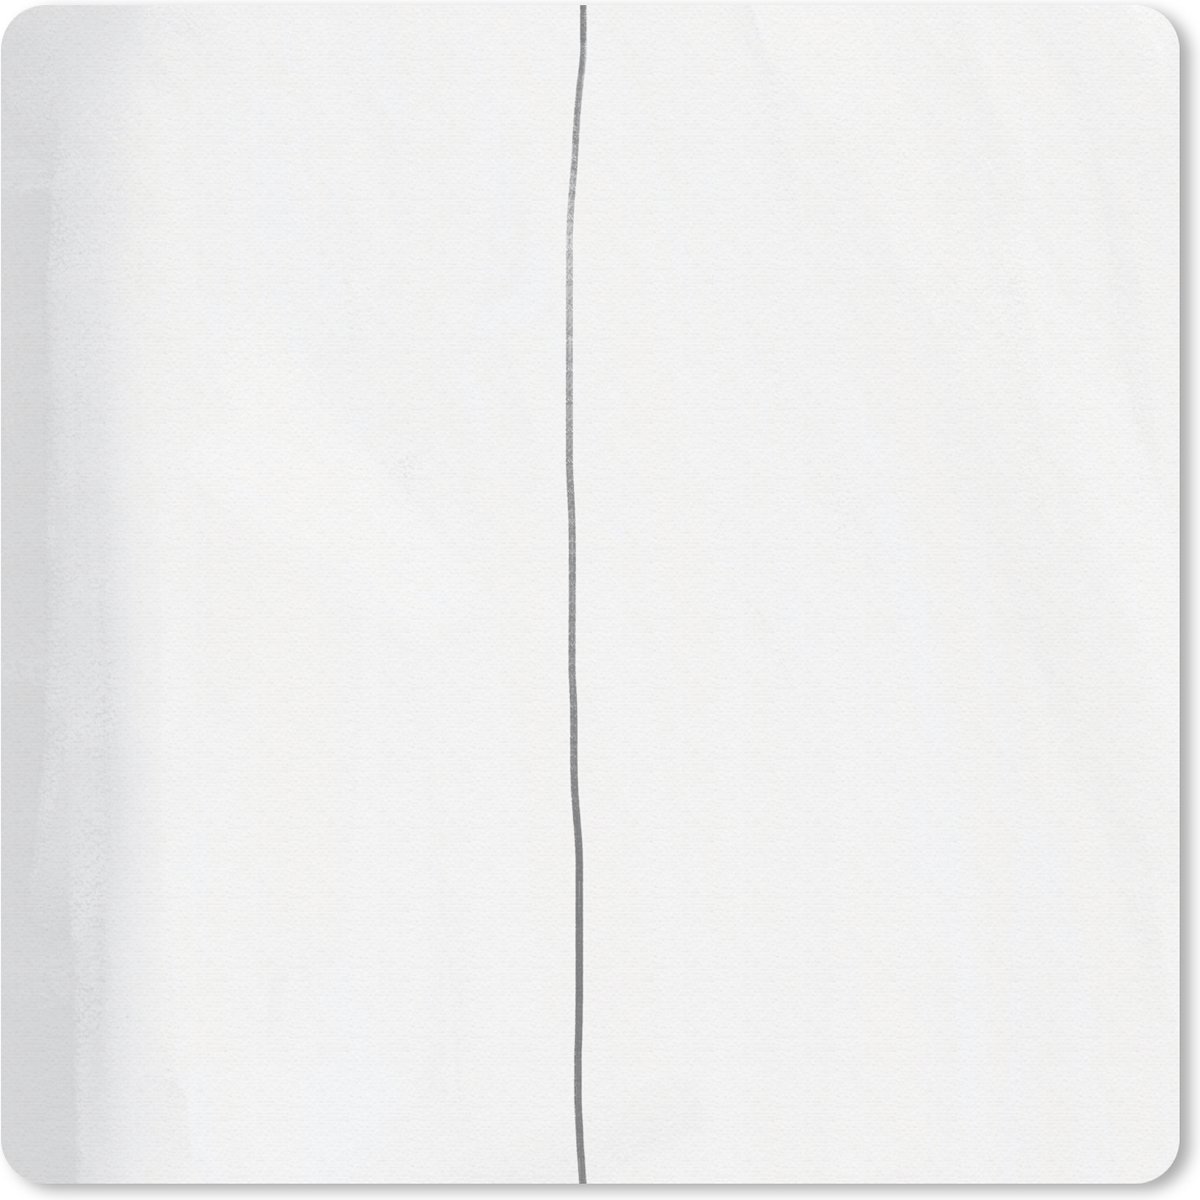 Muismat - Mousepad - Abstract - Lijn - Design - Taupe - 30x30 cm - Muismatten